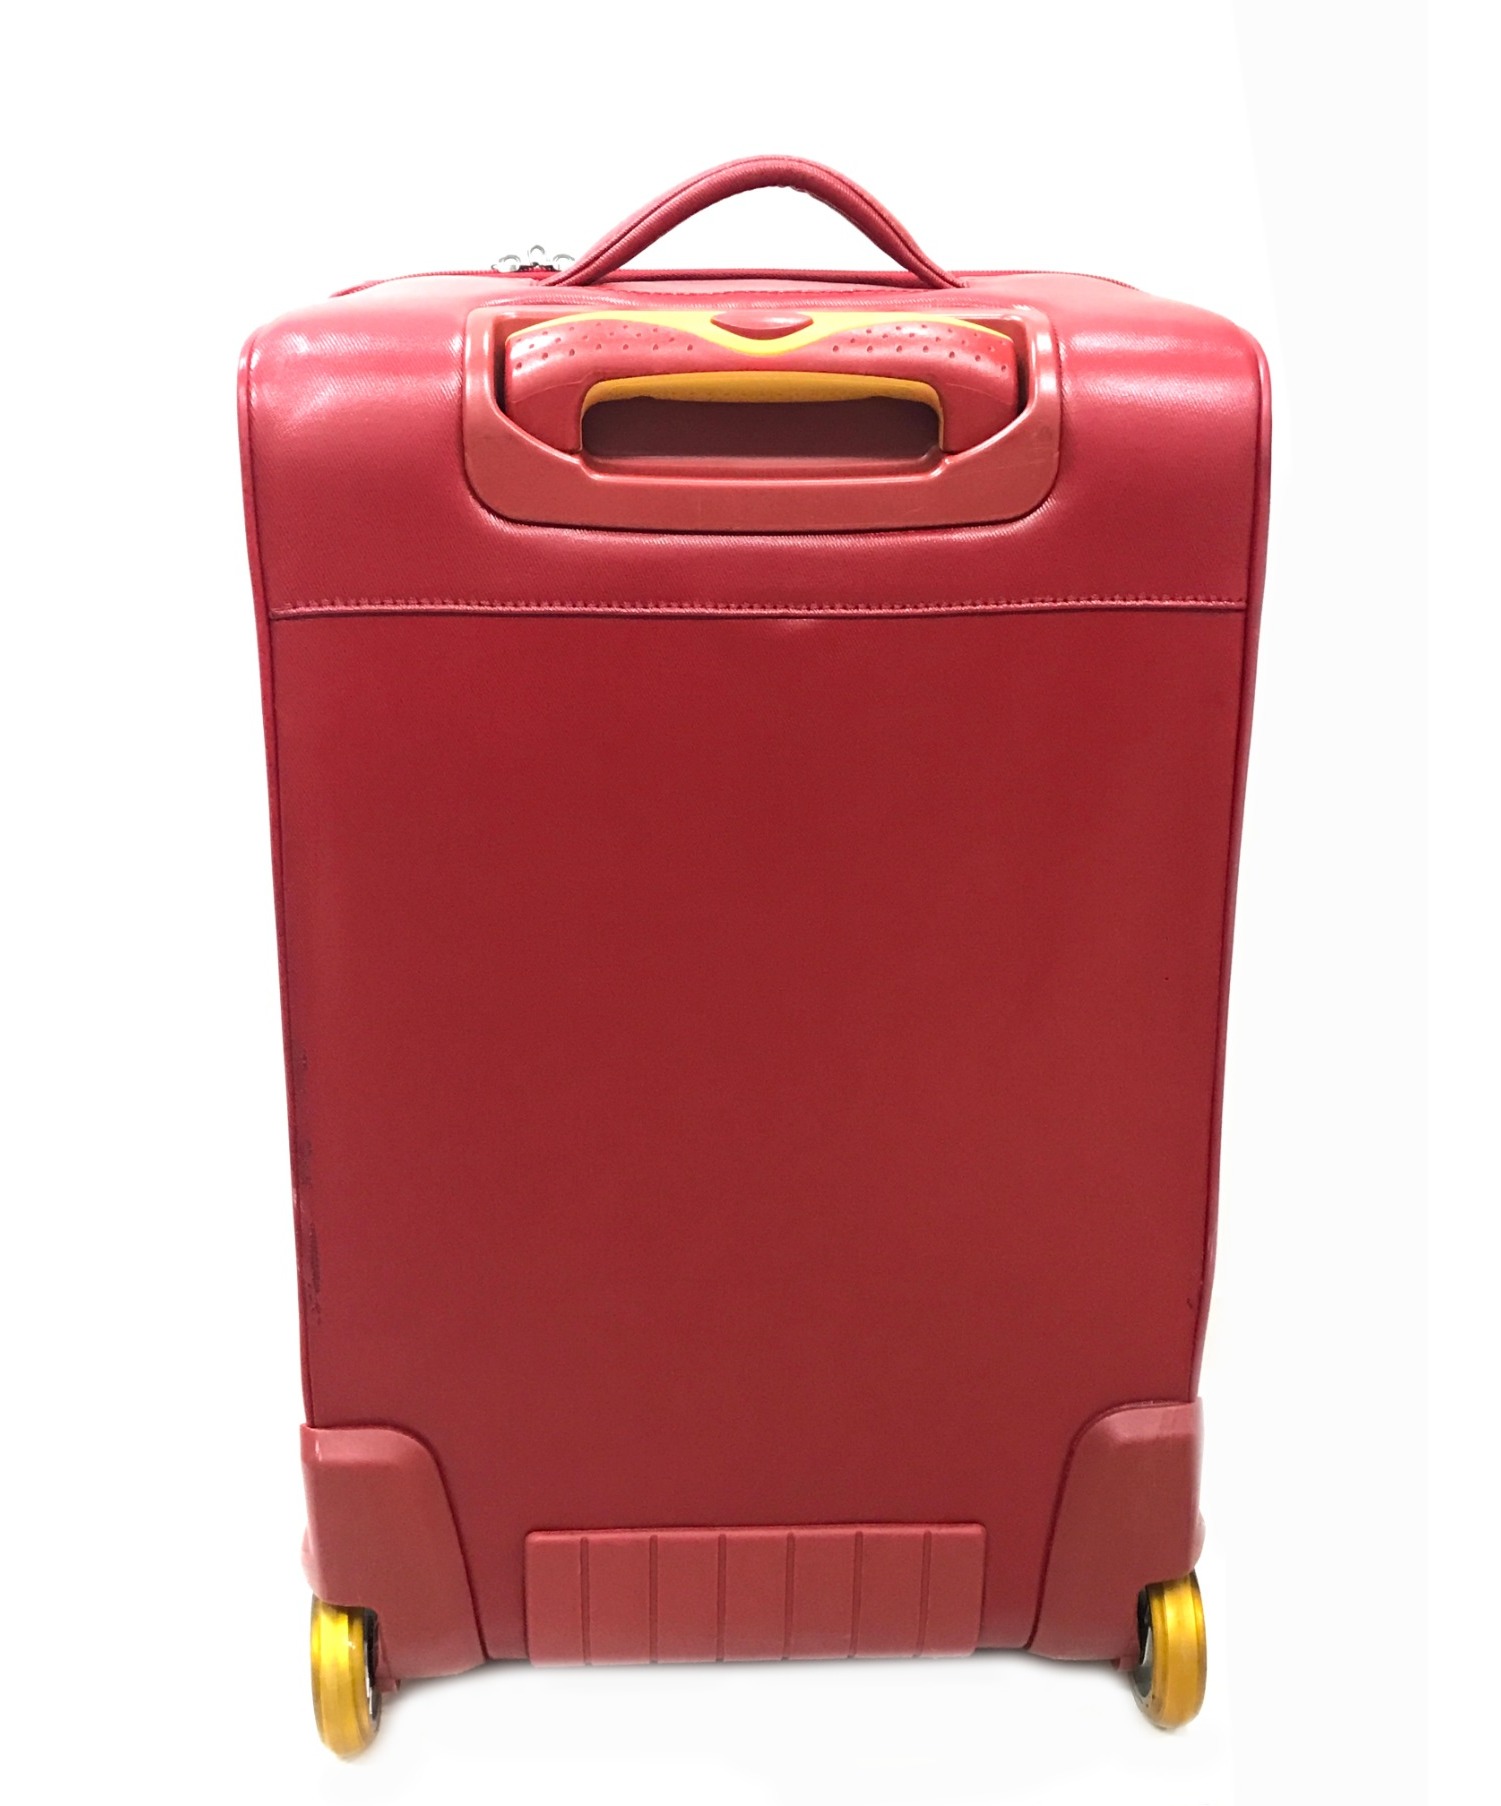 innovator イノベーター スーツケースメタリックレッド多少の使用感は